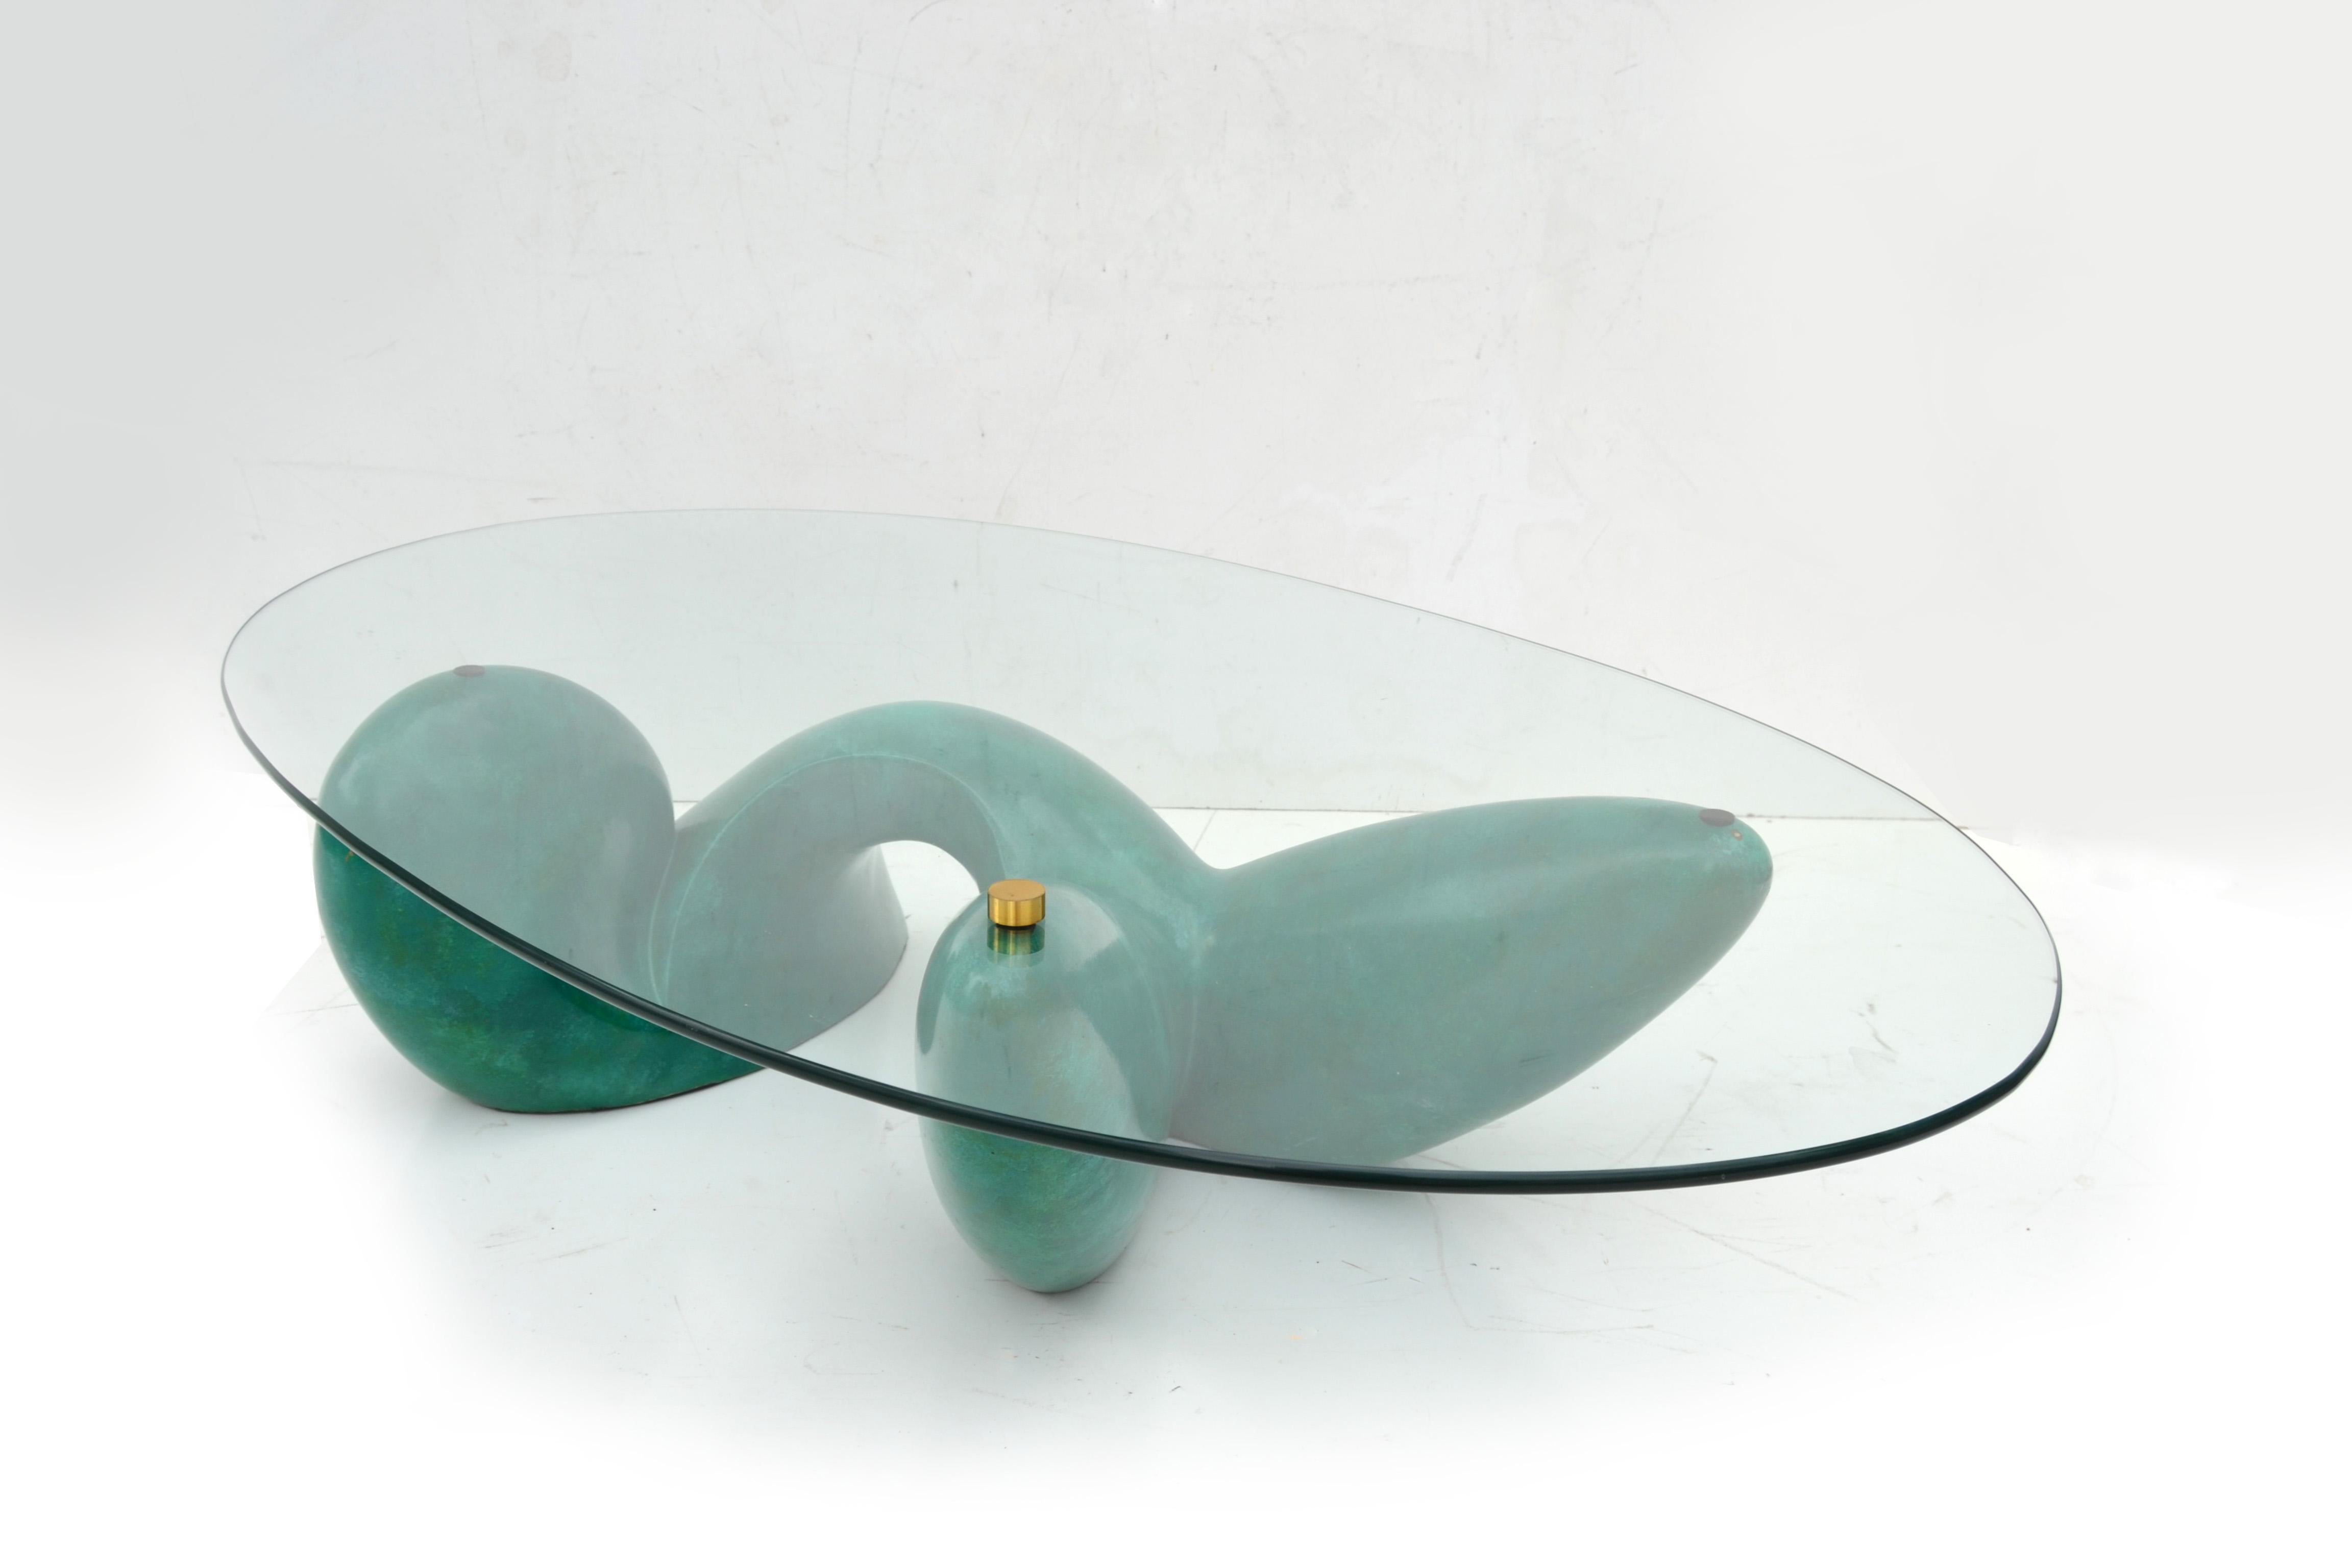 Einzigartiger, vom Künstler Philippe Jean signierter Leda Couchtisch, hergestellt für Maison Jansen 1975 in Frankreich.
Abstrakter Sockel mit einem ovalen Glas, das fest in den Sockel geschraubt ist.
Dieser Couchtisch stammt aus einer Auflage von